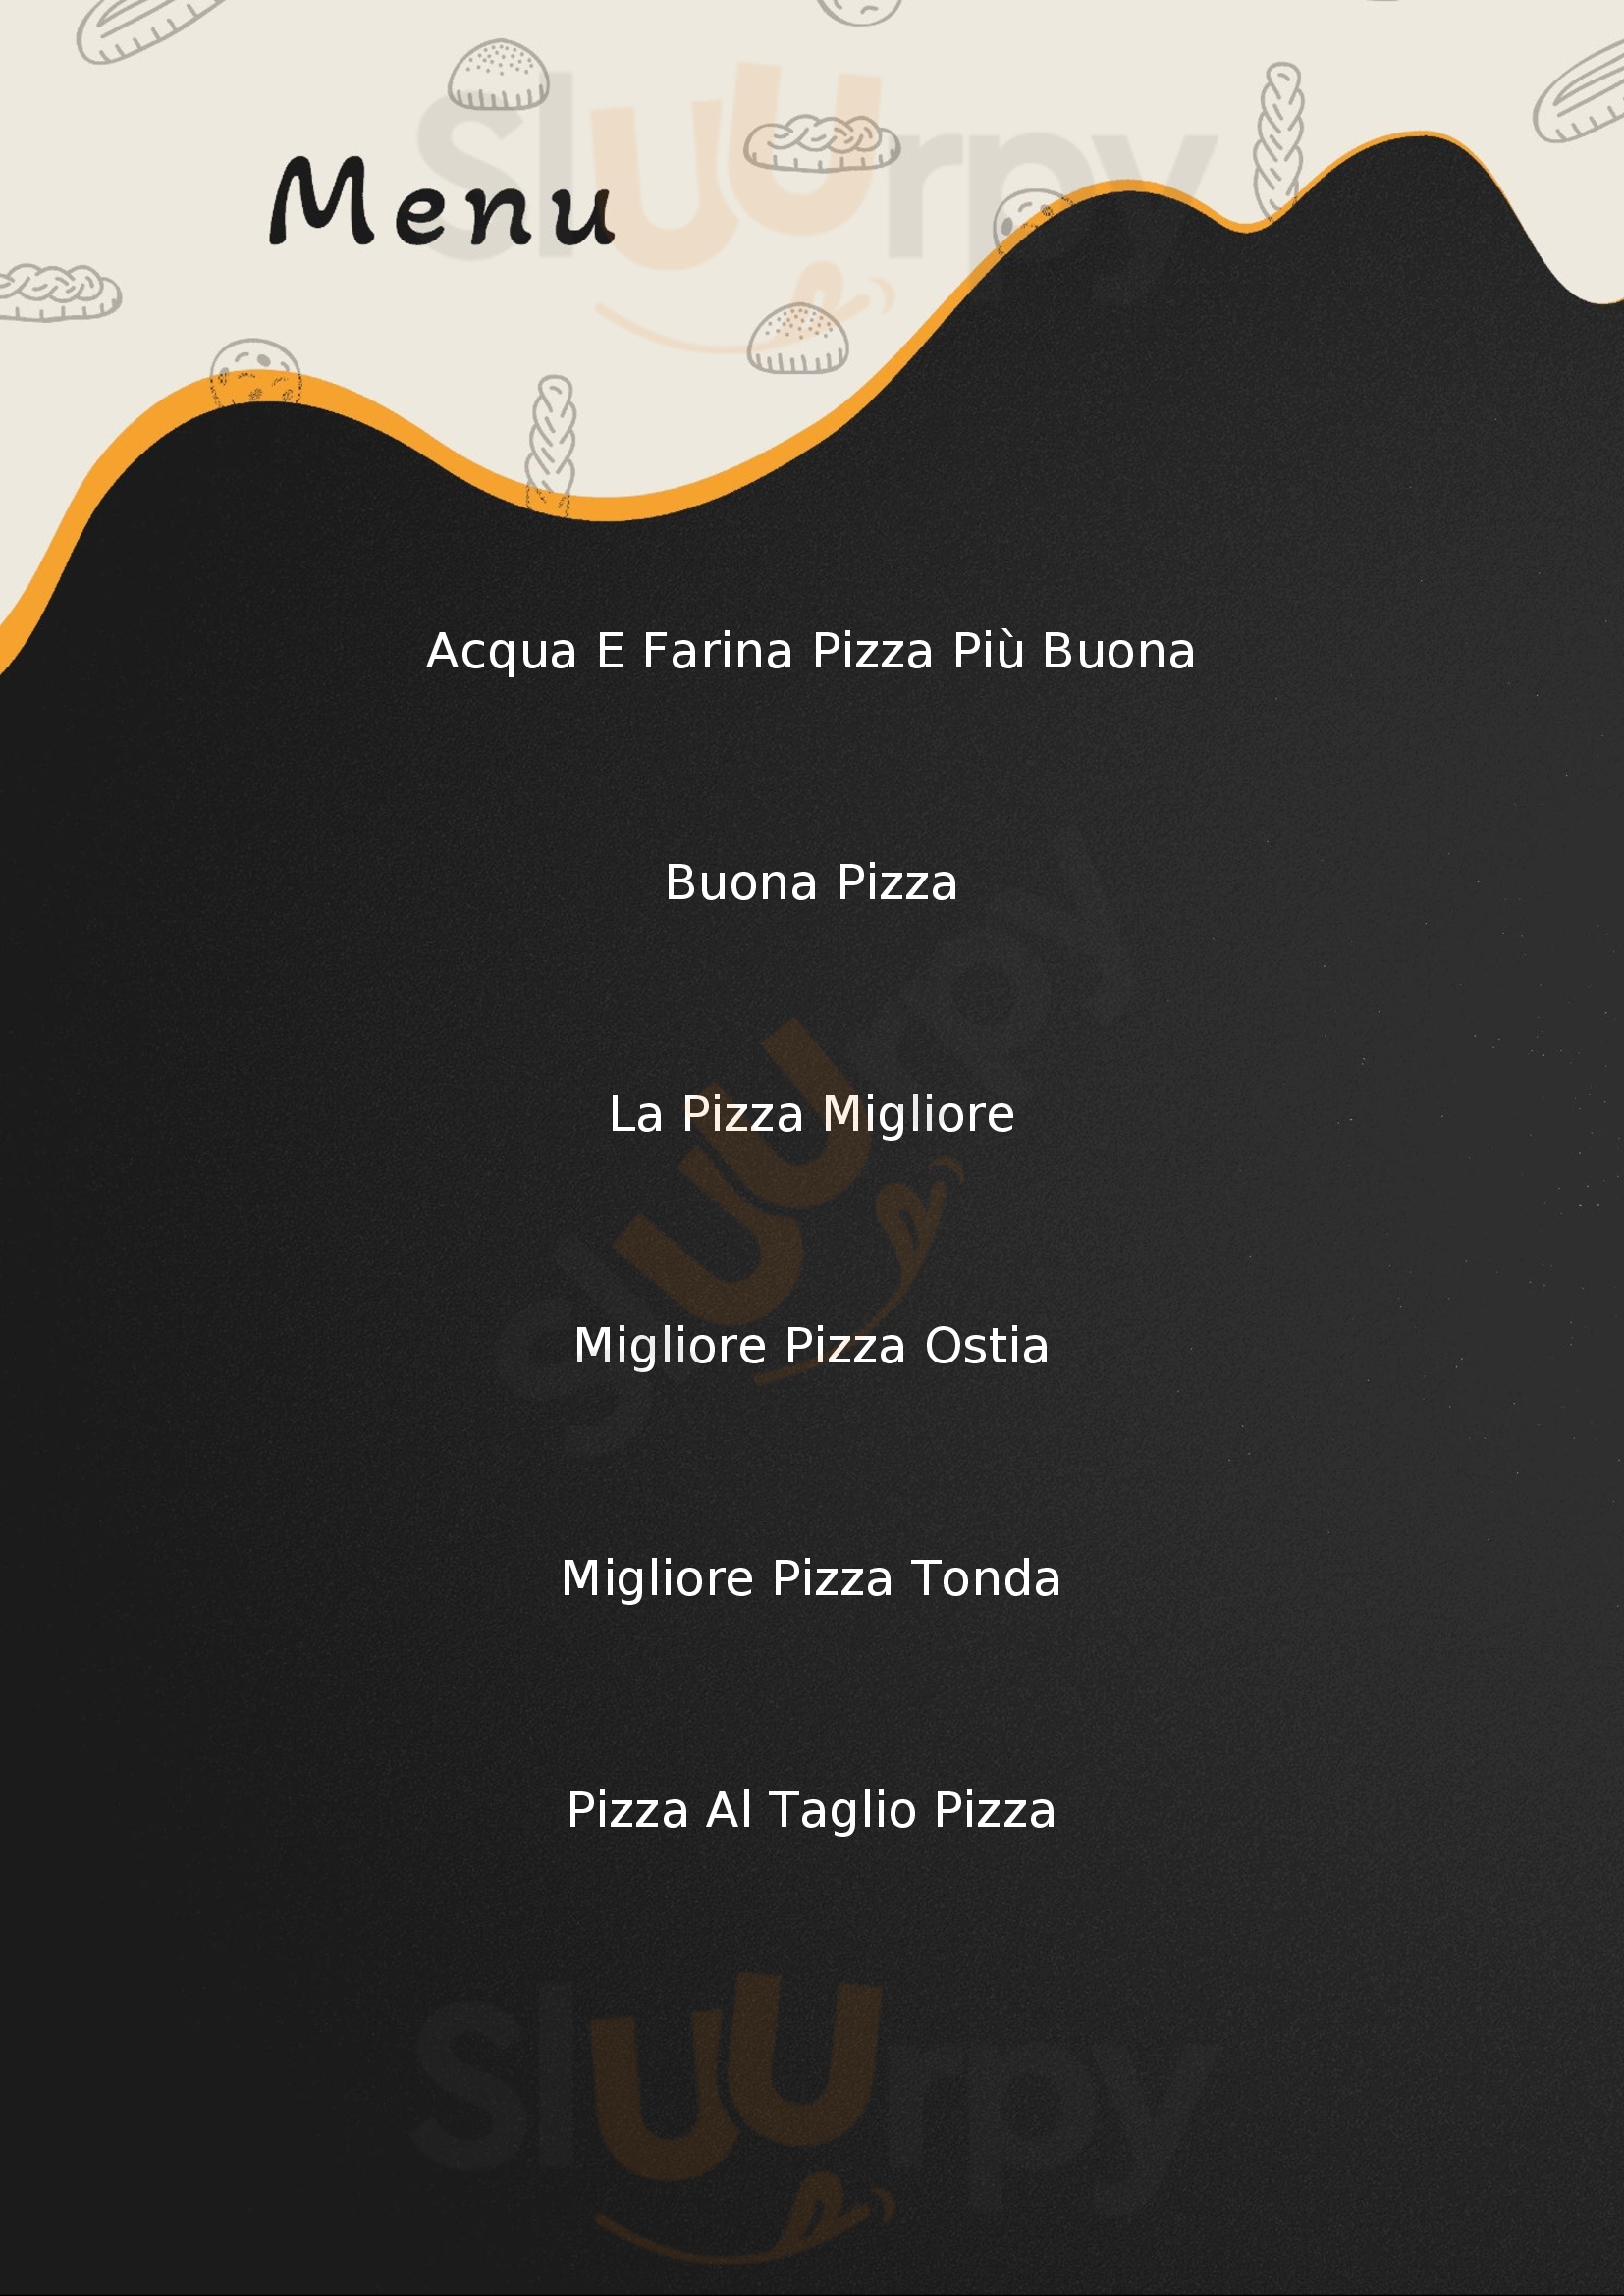 Pizzeria Acqua E Farina Lido di Ostia menù 1 pagina